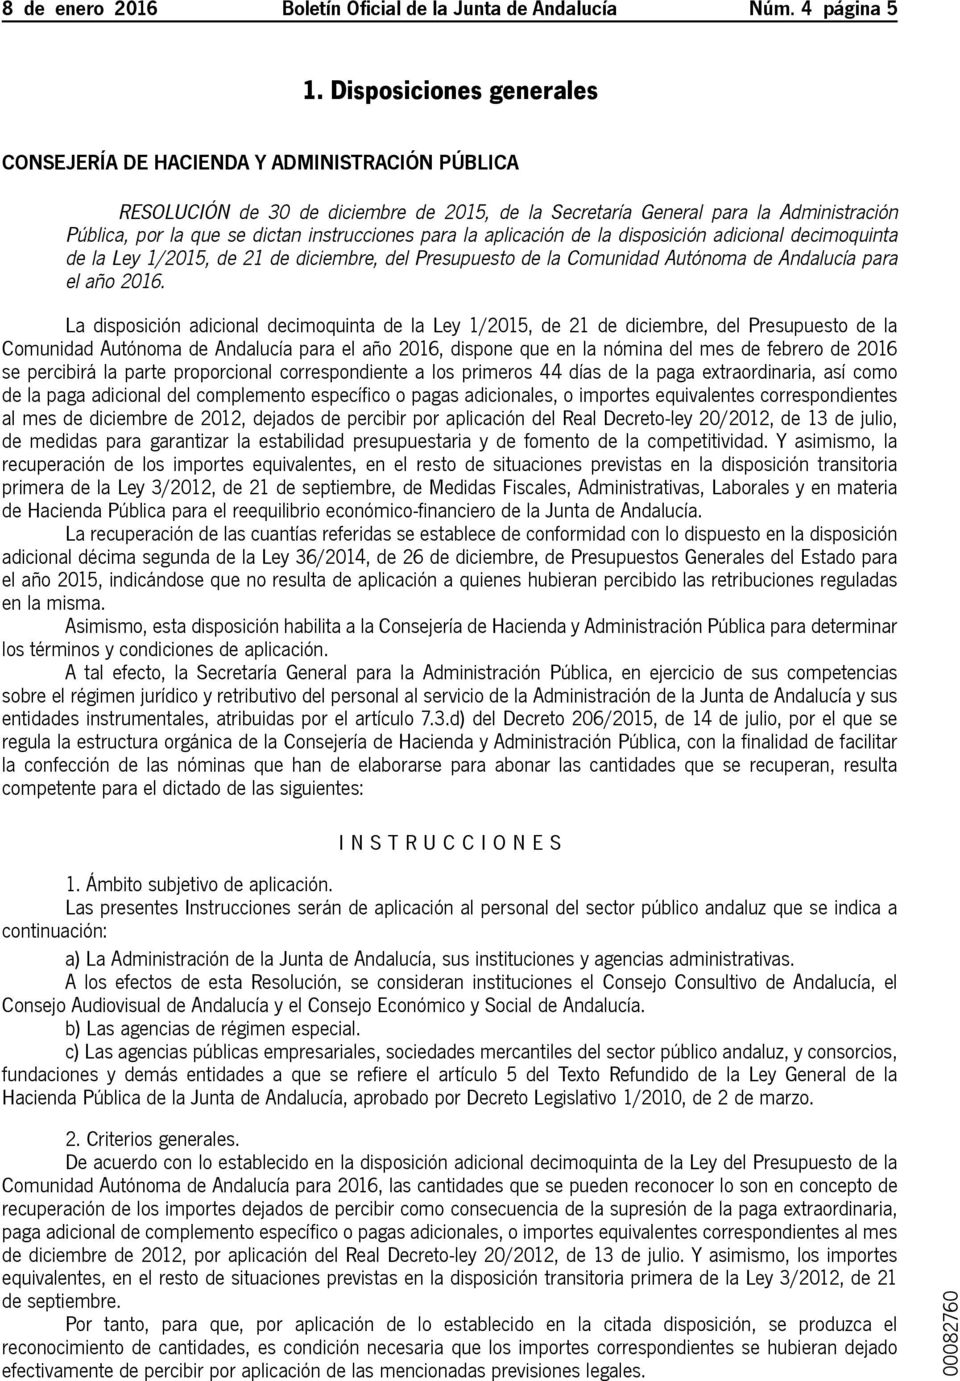 instrucciones para la aplicación de la disposición adicional decimoquinta de la Ley 1/2015, de 21 de diciembre, del Presupuesto de la Comunidad Autónoma de Andalucía para el año 2016.